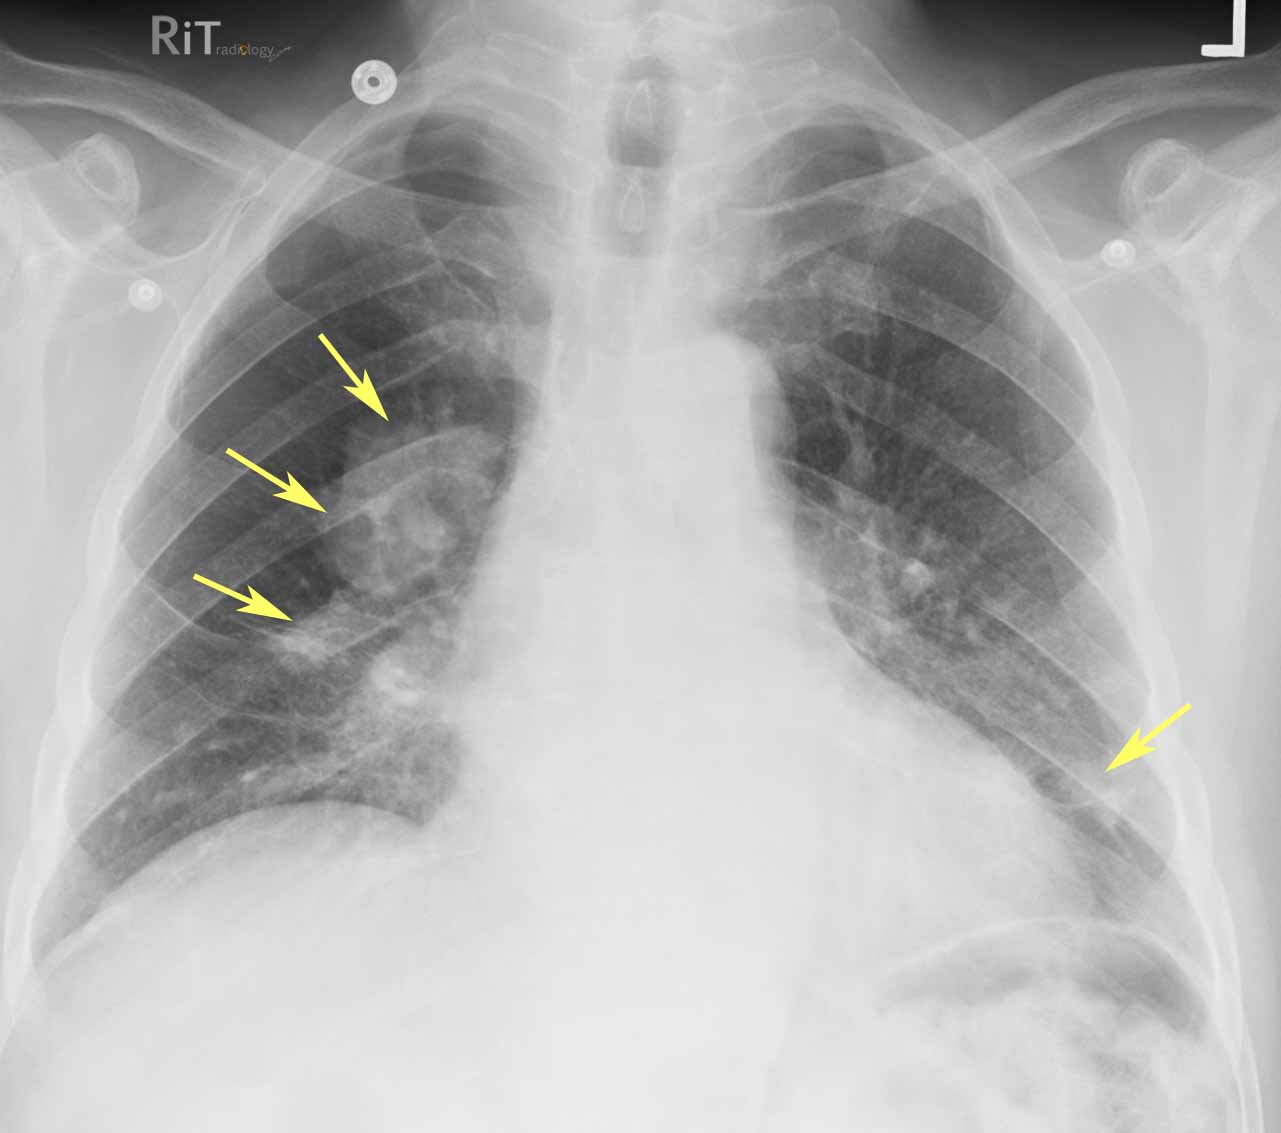 ILO Chest X-rays